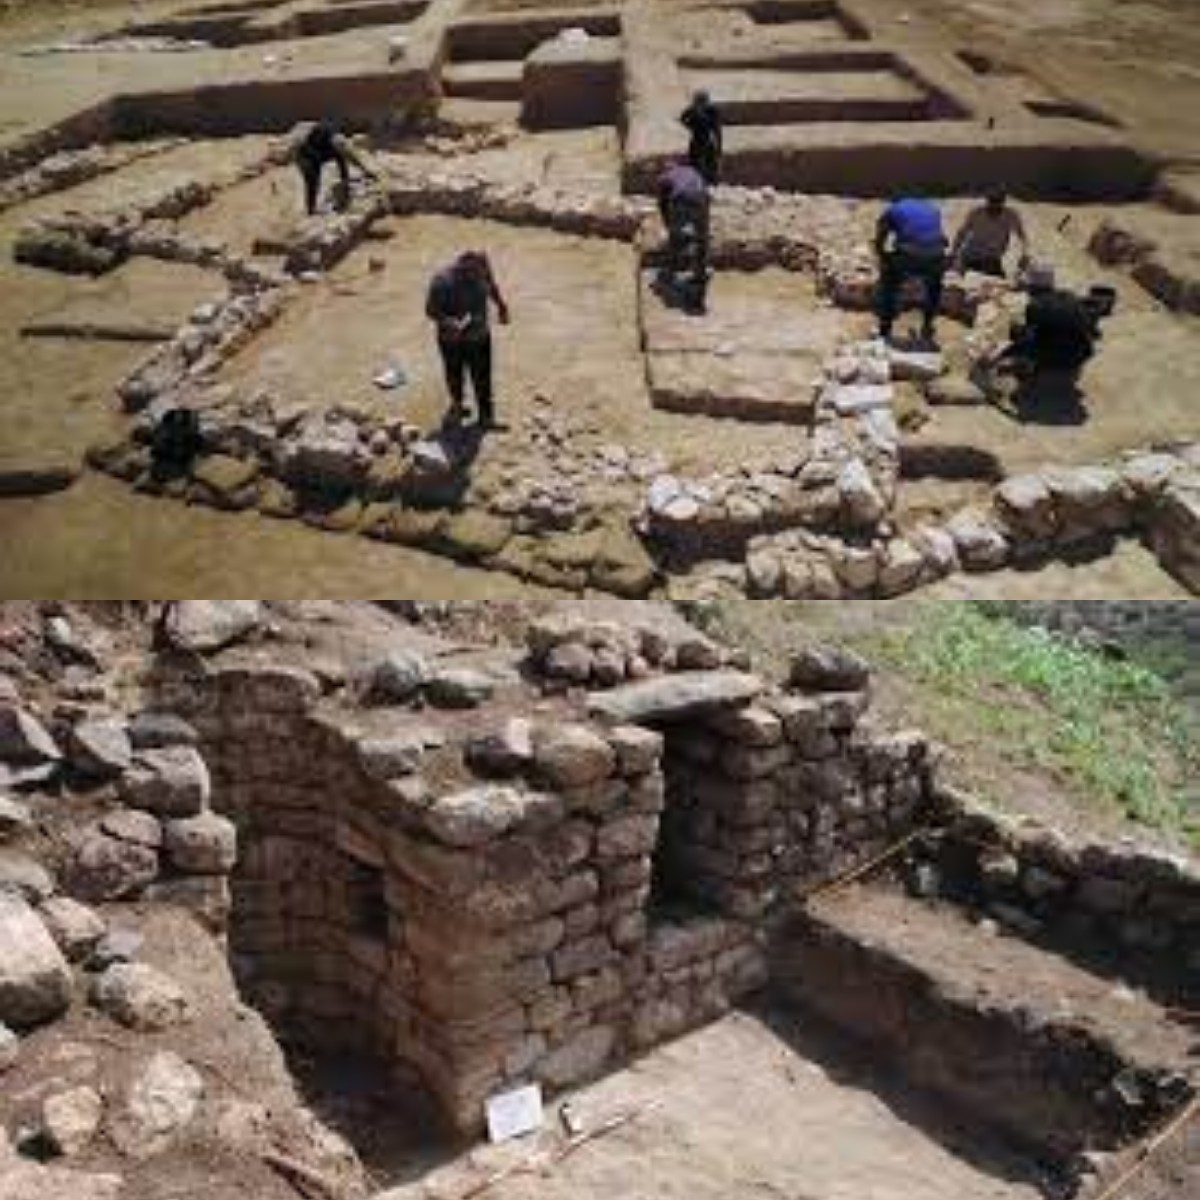 Menjelajahi Sejarah Peradaban Agama! Arkeolog Temukan Sisa-sisa Masjid Kuno di Israel 